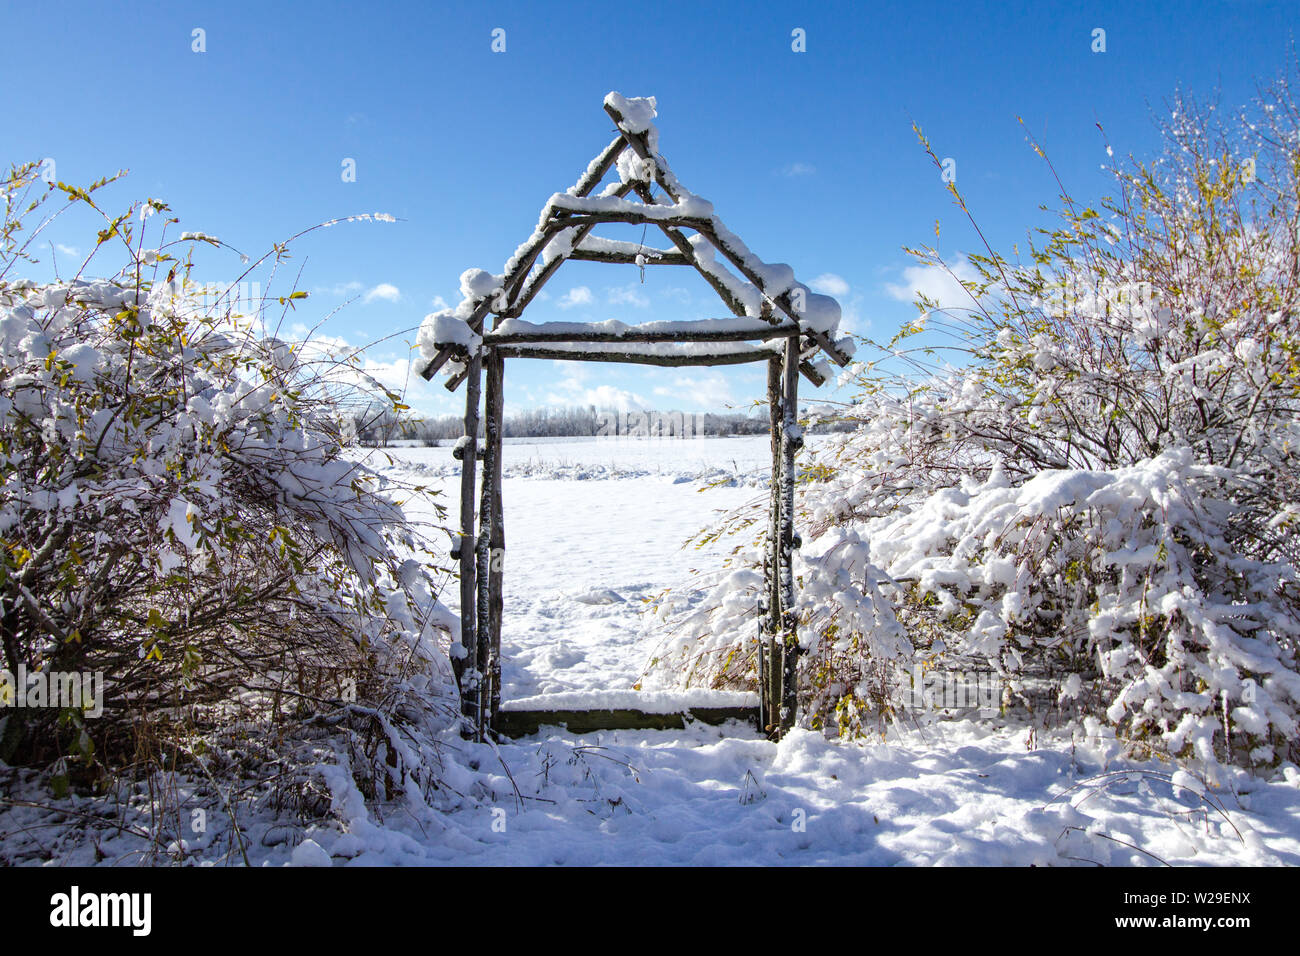 Jardín de invierno paisaje. Mandril de madera rústica rodeada por plantas y árboles cubiertos bajo un fresco caído nieve Foto de stock